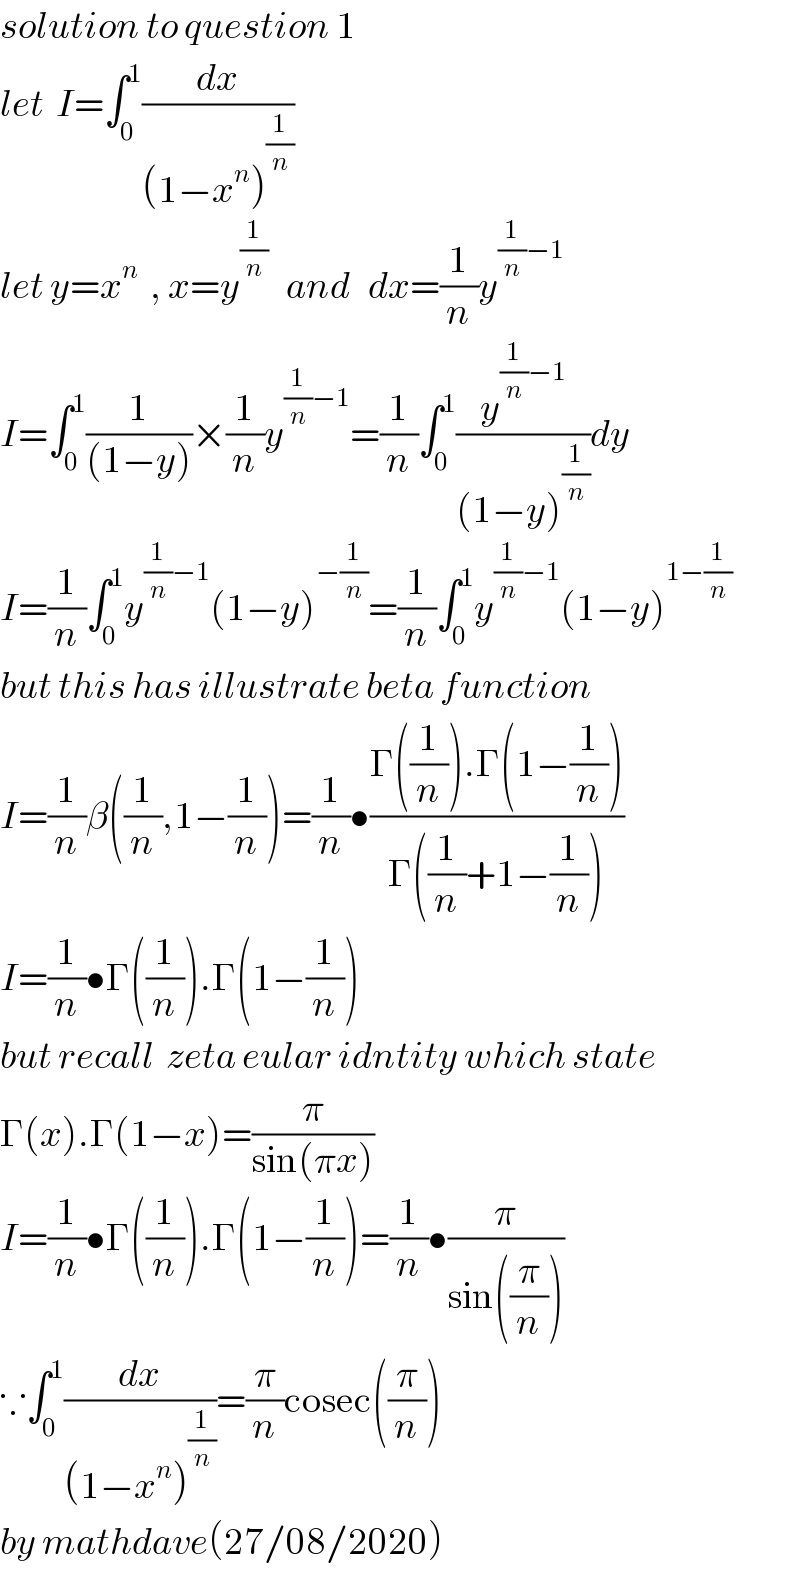 solution to question 1  let  I=∫_0 ^1 (dx/((1−x^n )^(1/n) ))  let y=x^n   , x=y^(1/n)    and   dx=(1/n)y^((1/n)−1)   I=∫_0 ^1 (1/((1−y)))×(1/n)y^((1/n)−1) =(1/n)∫_0 ^1 (y^((1/n)−1) /((1−y)^(1/n) ))dy  I=(1/n)∫_0 ^1 y^((1/n)−1) (1−y)^(−(1/n)) =(1/n)∫_0 ^1 y^((1/n)−1) (1−y)^(1−(1/n))   but this has illustrate beta function  I=(1/n)β((1/n),1−(1/n))=(1/n)•((Γ((1/n)).Γ(1−(1/n)))/(Γ((1/n)+1−(1/n))))  I=(1/n)•Γ((1/n)).Γ(1−(1/n))  but recall  zeta eular idntity which state  Γ(x).Γ(1−x)=(π/(sin(πx)))  I=(1/n)•Γ((1/n)).Γ(1−(1/n))=(1/n)•(π/(sin((π/n))))  ∵∫_0 ^1 (dx/((1−x^n )^(1/n) ))=(π/n)cosec((π/n))  by mathdave(27/08/2020)  